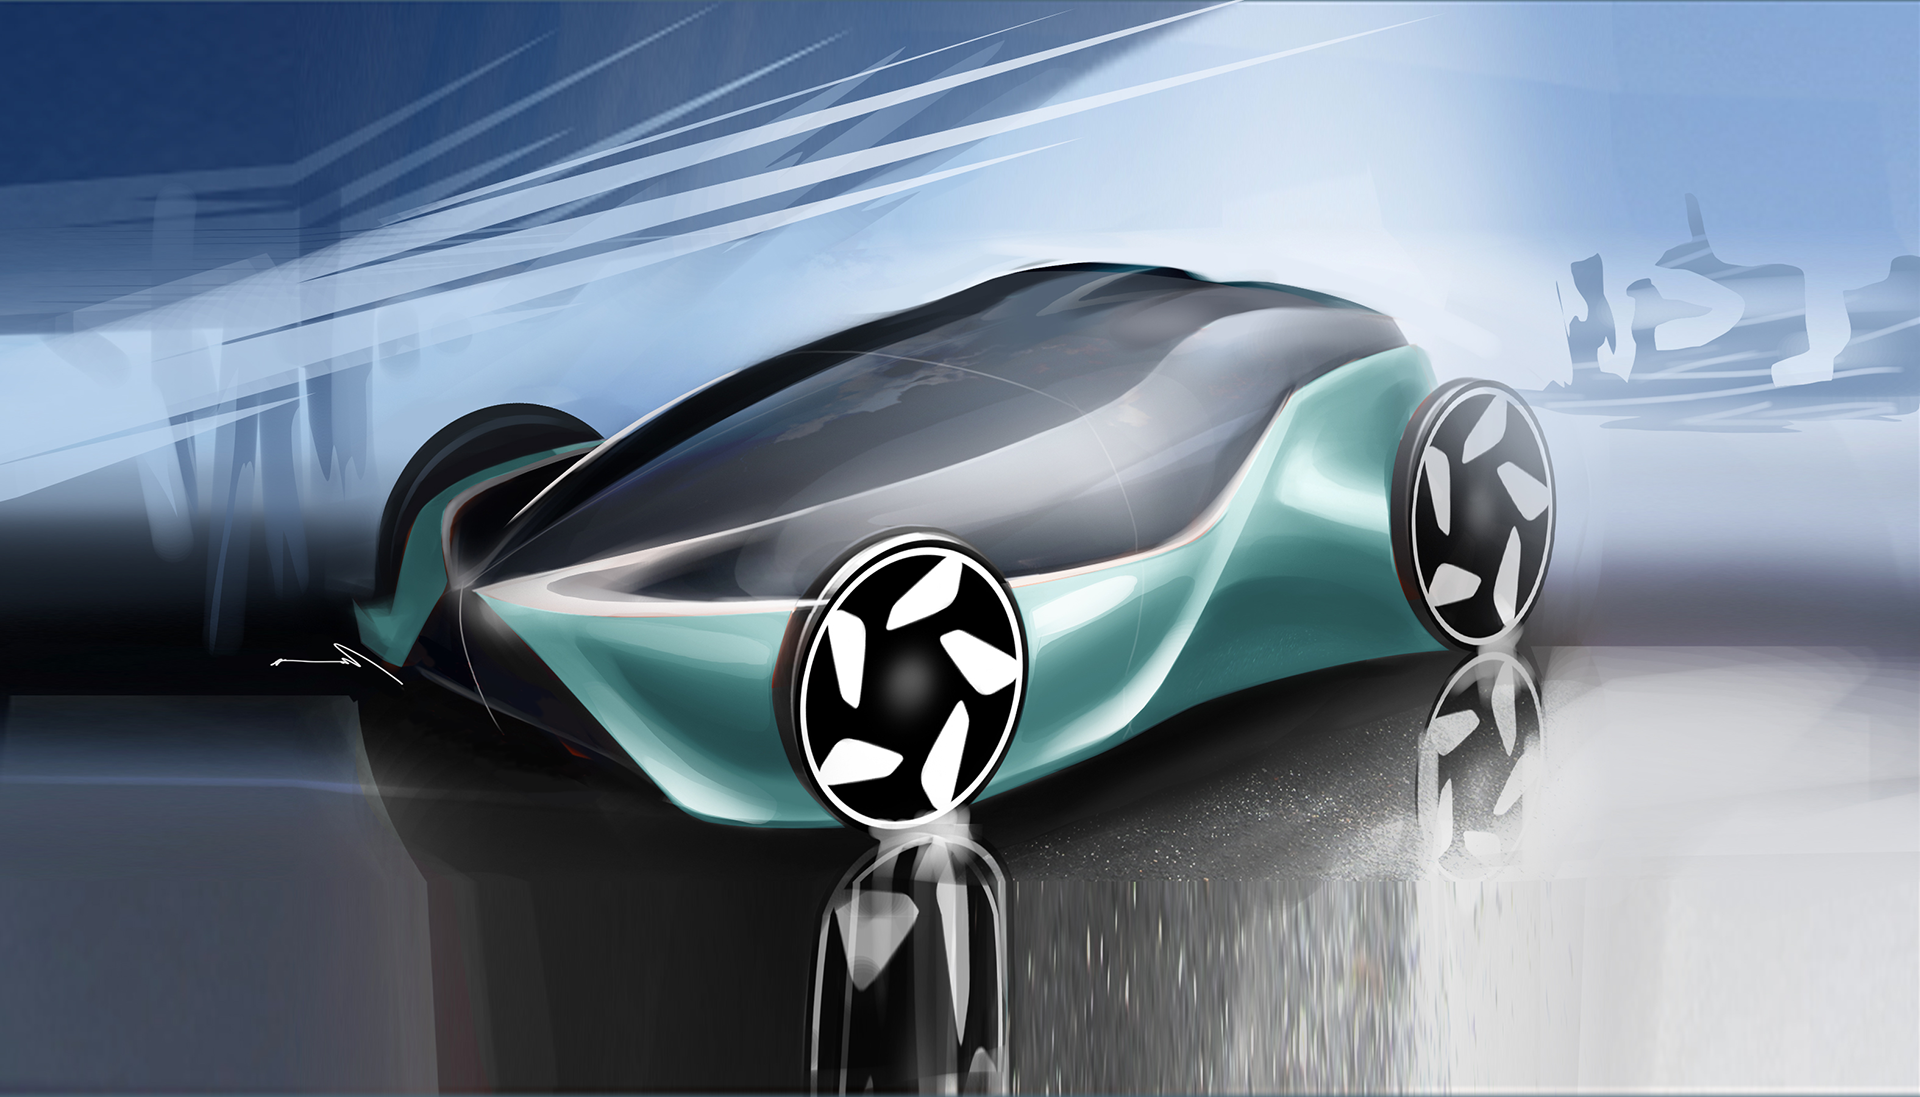 16年 新企画 未来のクルマ展示会 トヨタ自動車株式会社 公式企業サイト